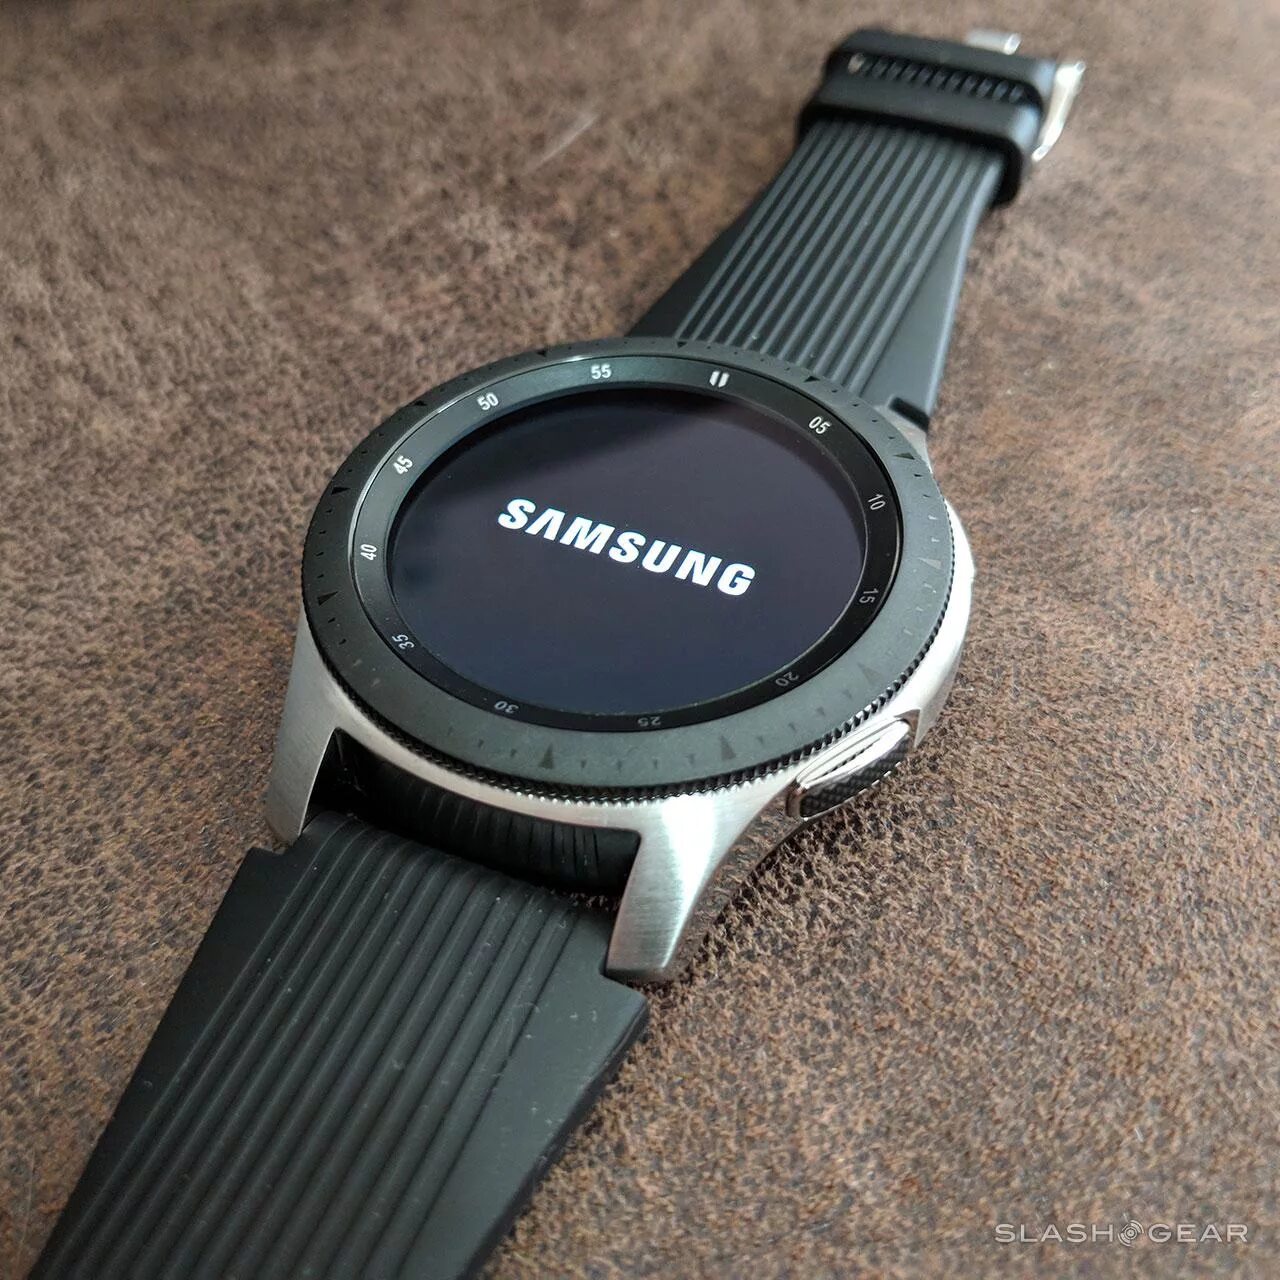 Samsung galaxy watch r800. Samsung Galaxy watch SM-r800. Samsung Galaxy watch 46mm SM-r800 Silver. Samsung Galaxy watch 46mm Silver r800.